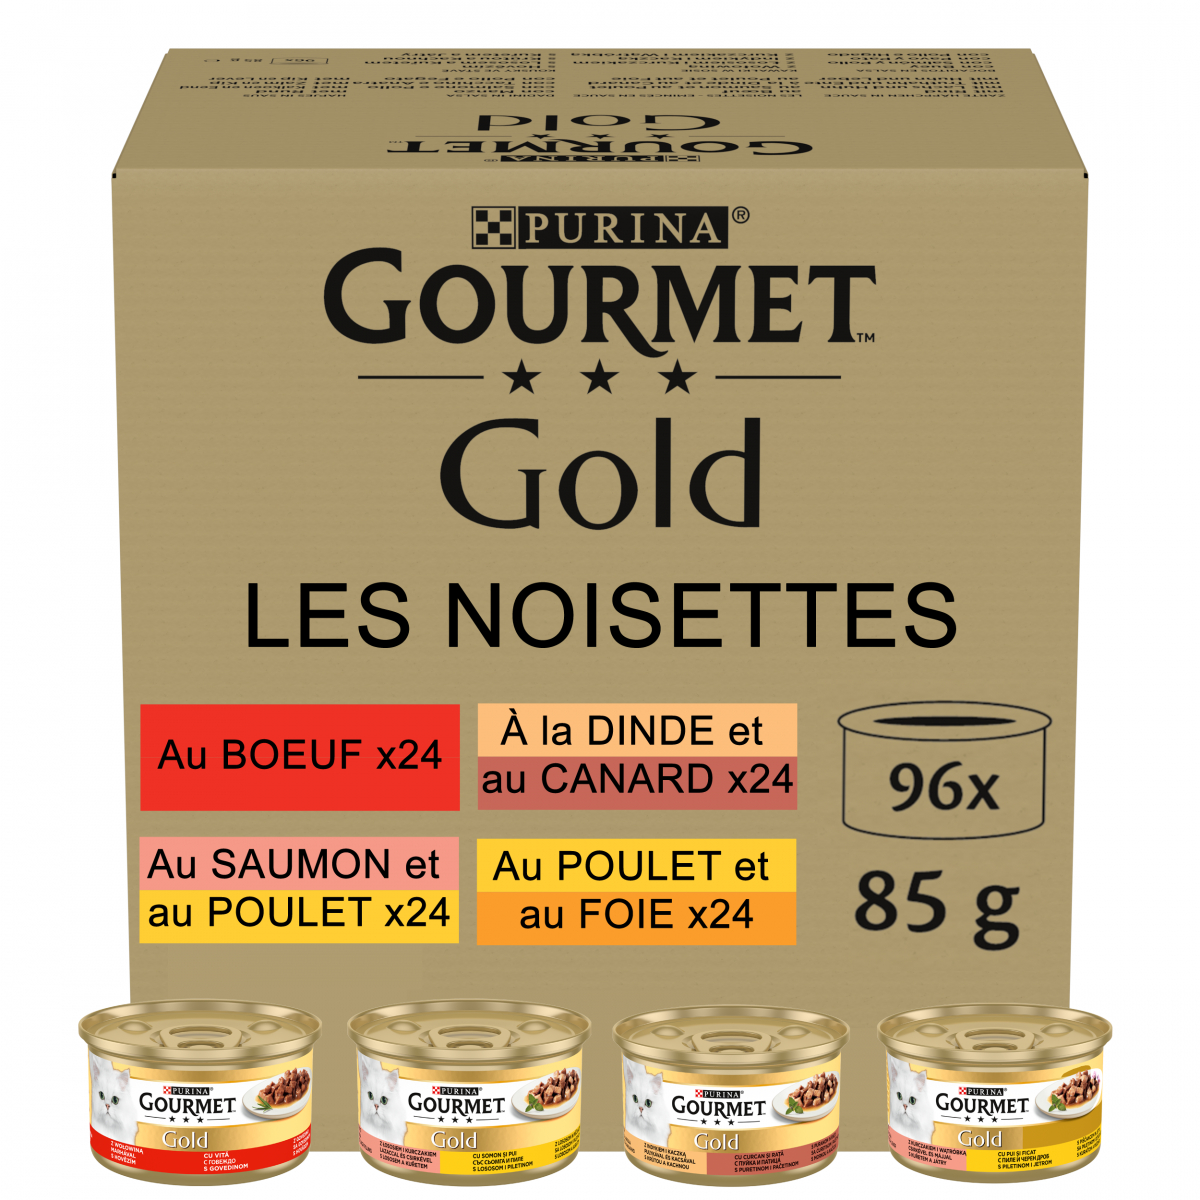 Gourmet Gold Les Mousselines 96 x 85 g à prix discount sur